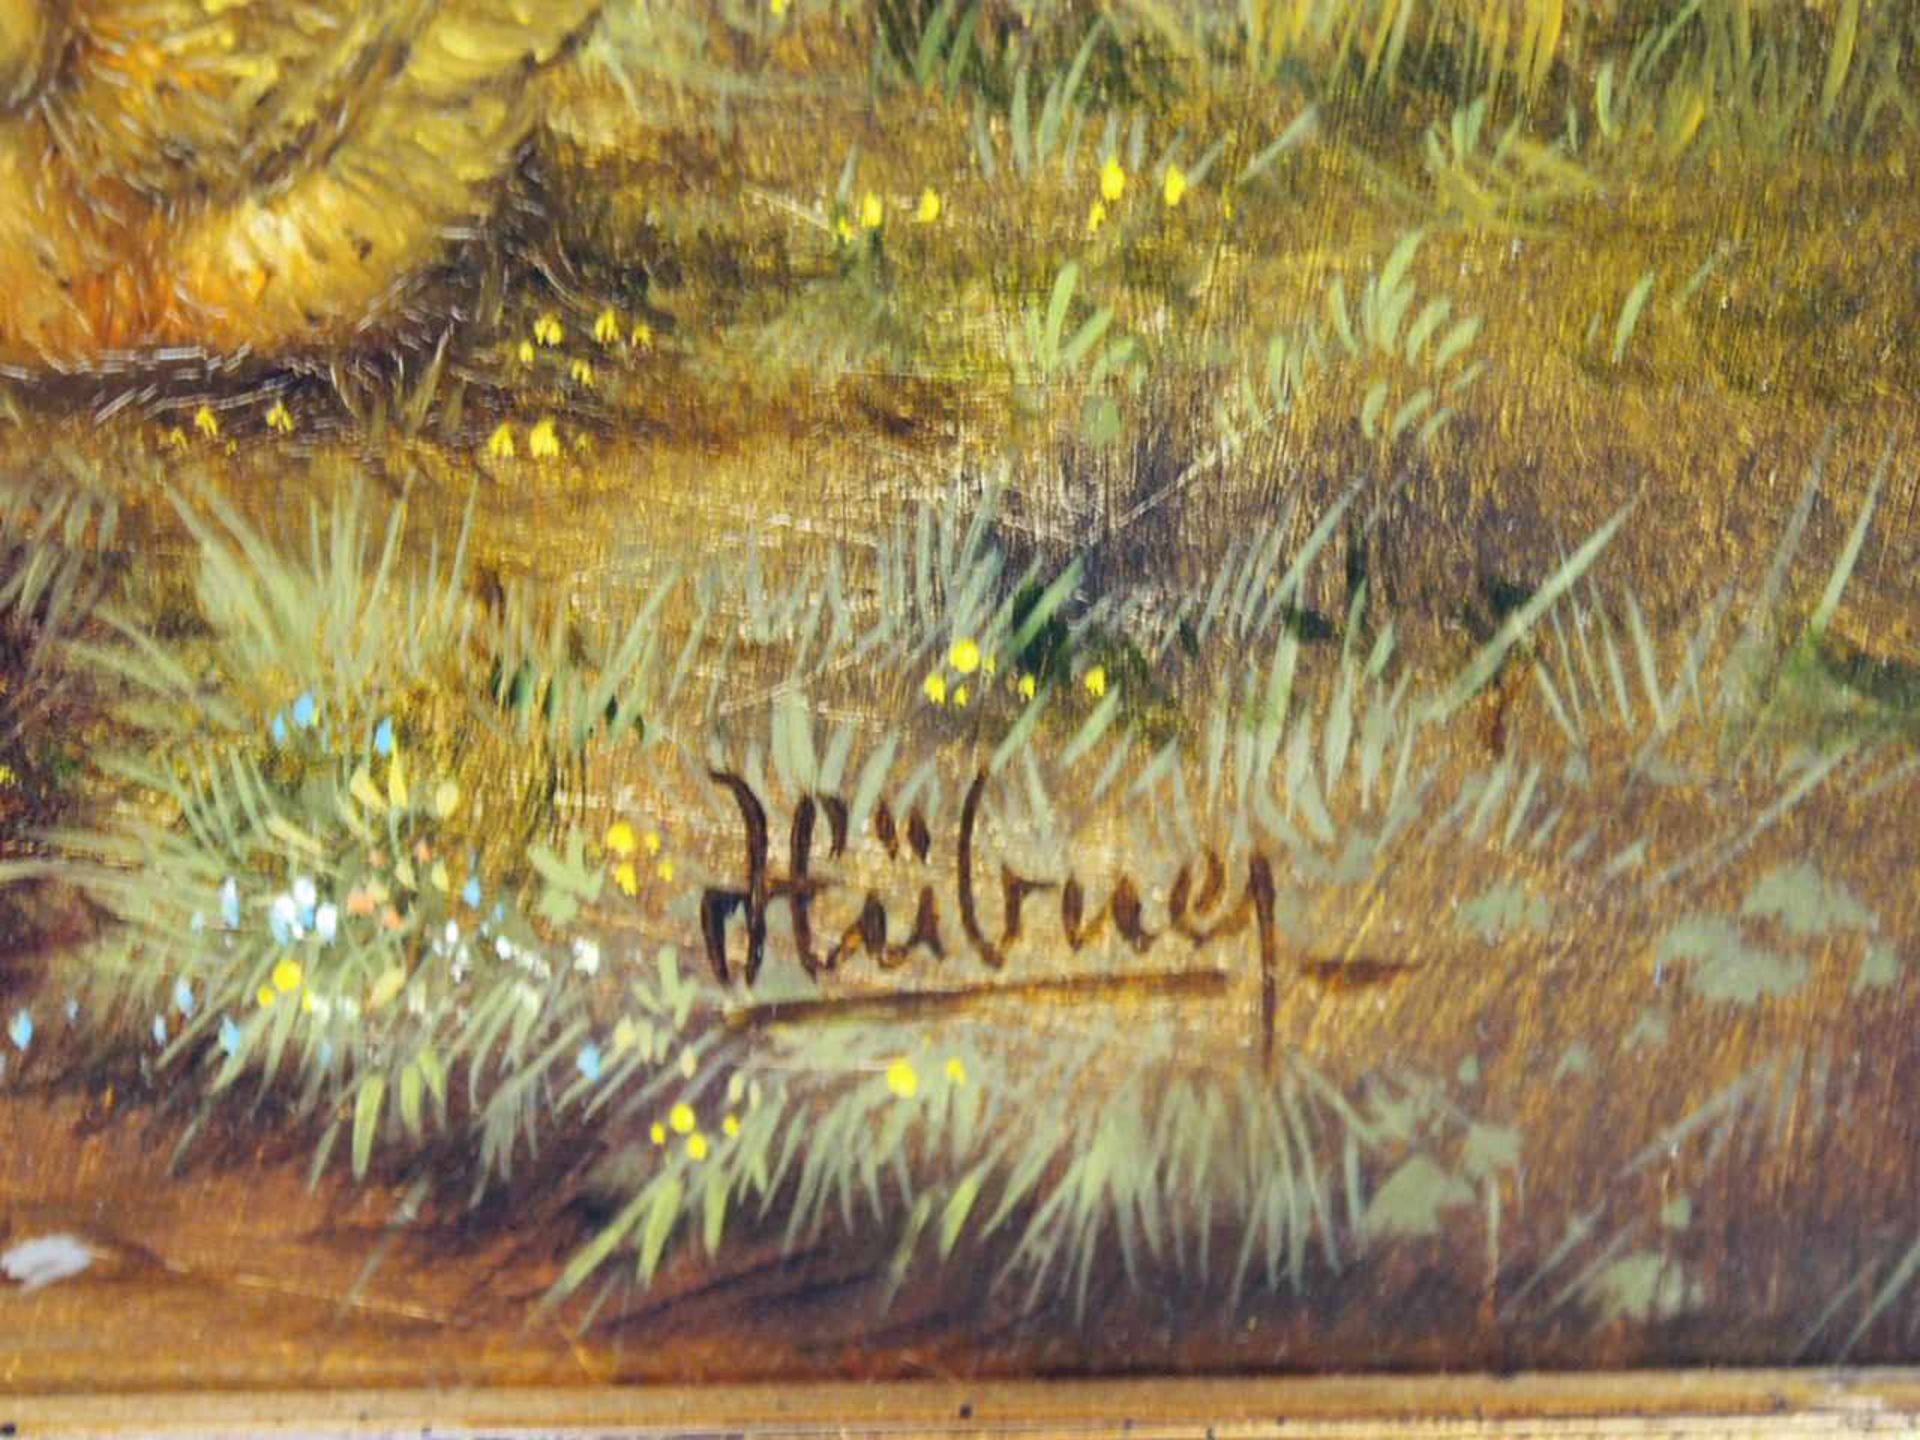 HÜBNER, Rainer*1943Enten am UferÖl auf Holz, signiert unten rechts, 17 x 23 cm, Rahmen- - -25.00 % - Image 3 of 3